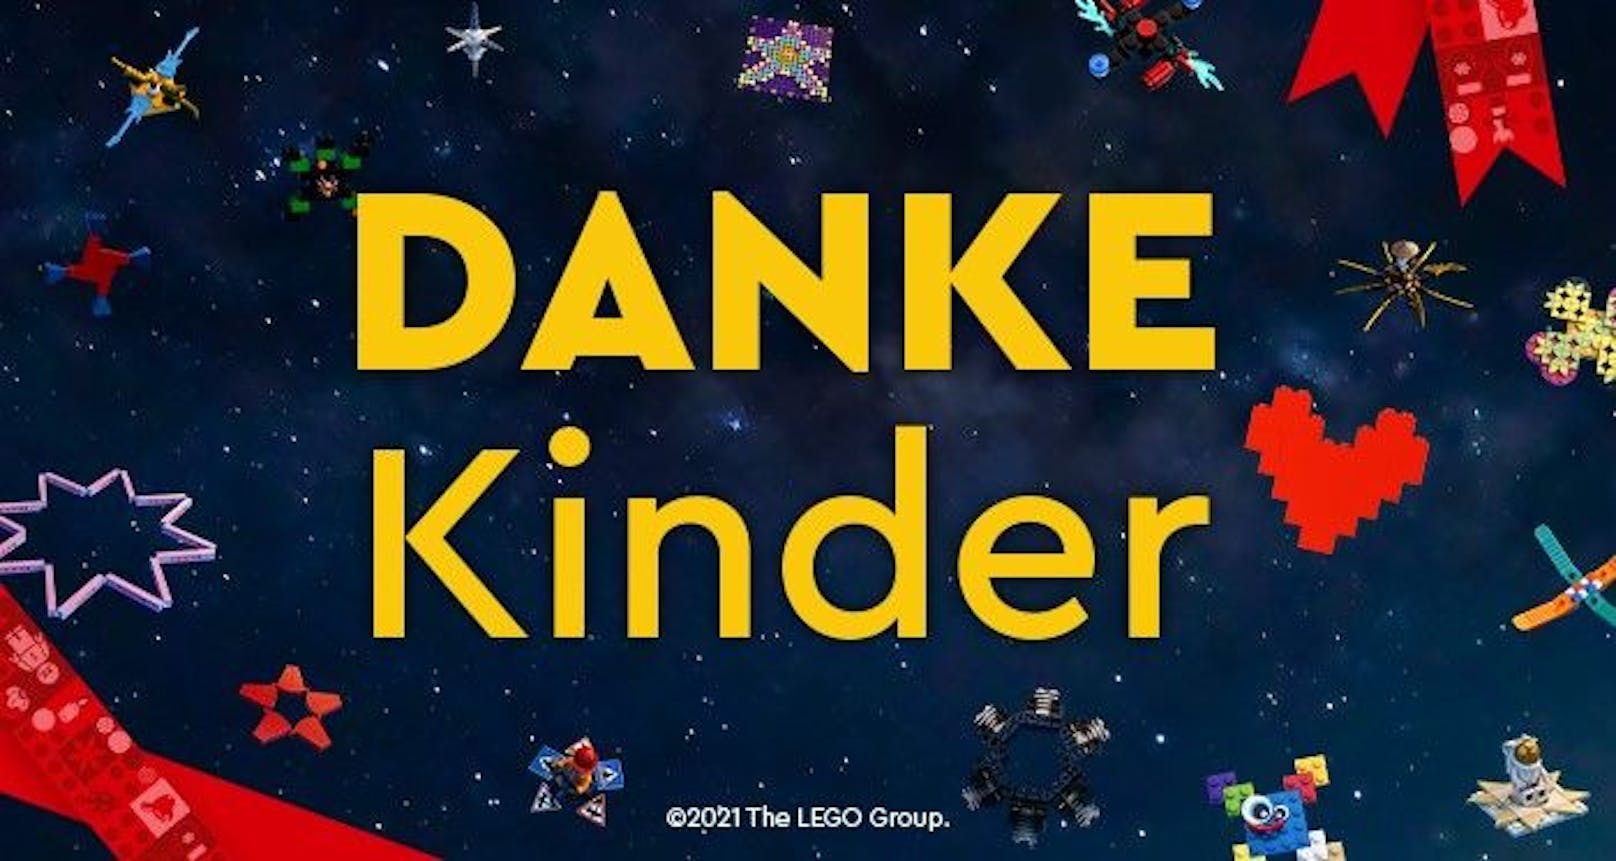 Um Kindern Danke zu sagen für das Durchhaltevermögen und die Kreativität, setzt die LEGO GmbH eine besondere Aktion um.